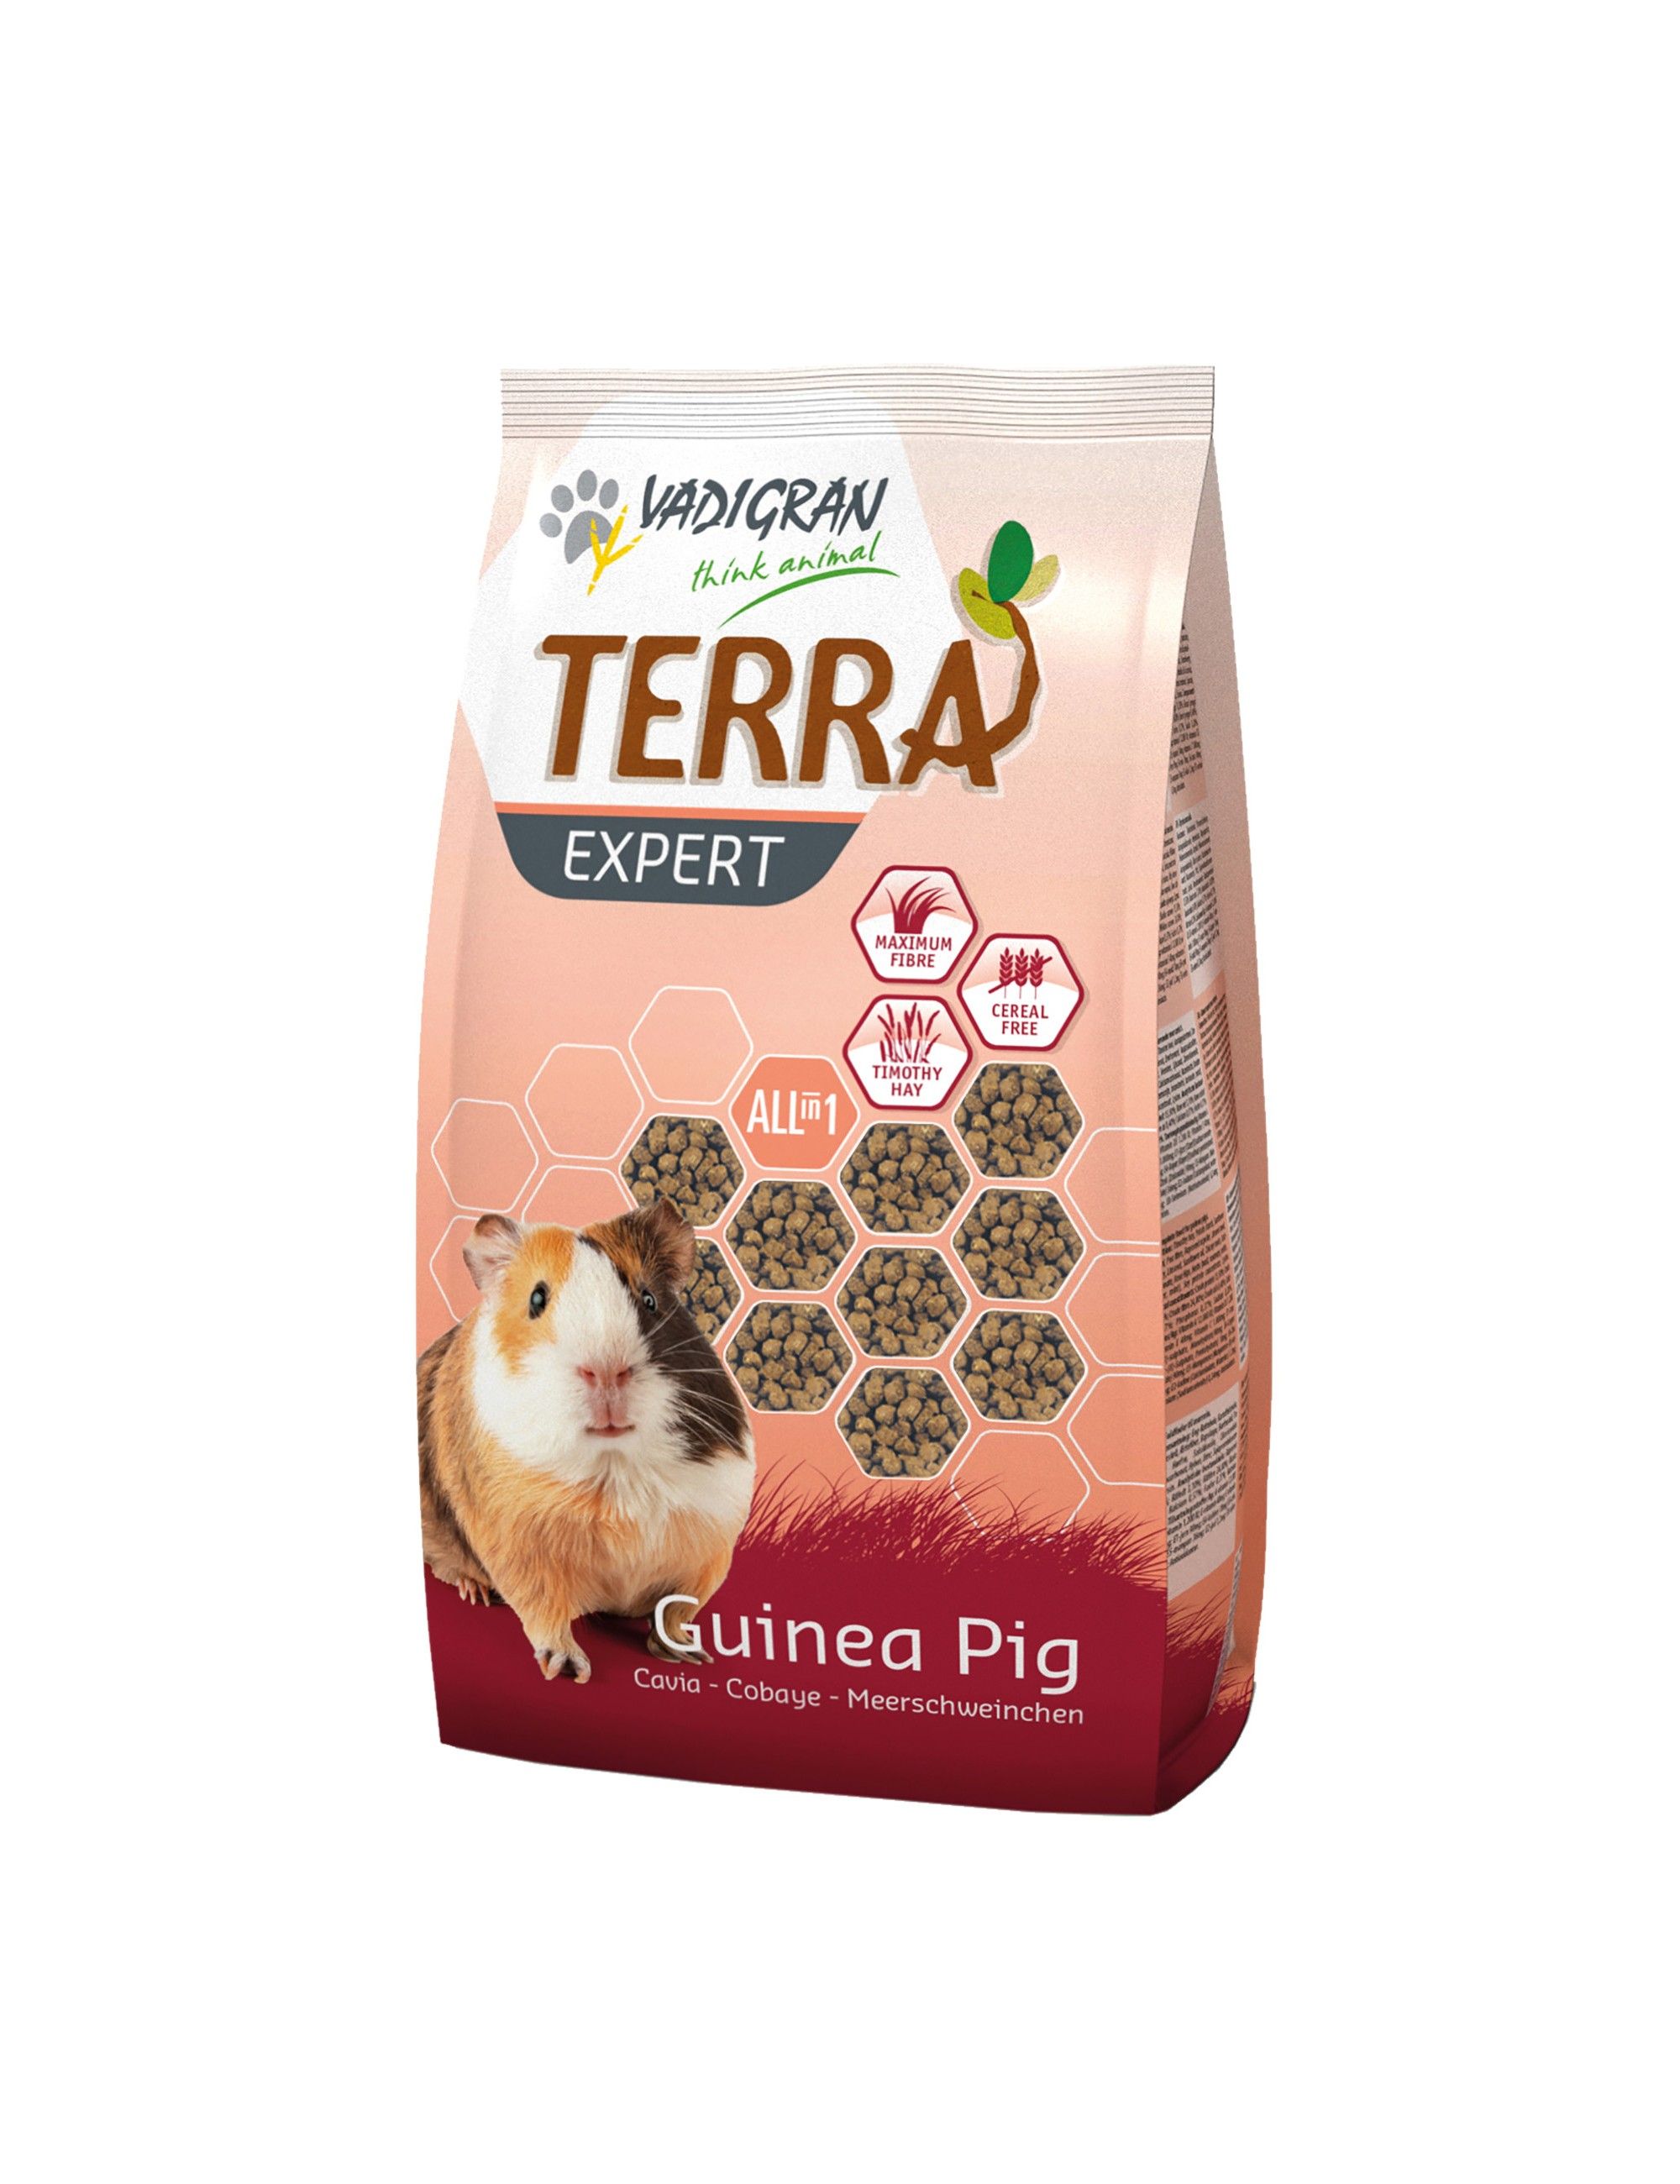 VADIGRAN - Terra Expert Guinea Pig Timothy